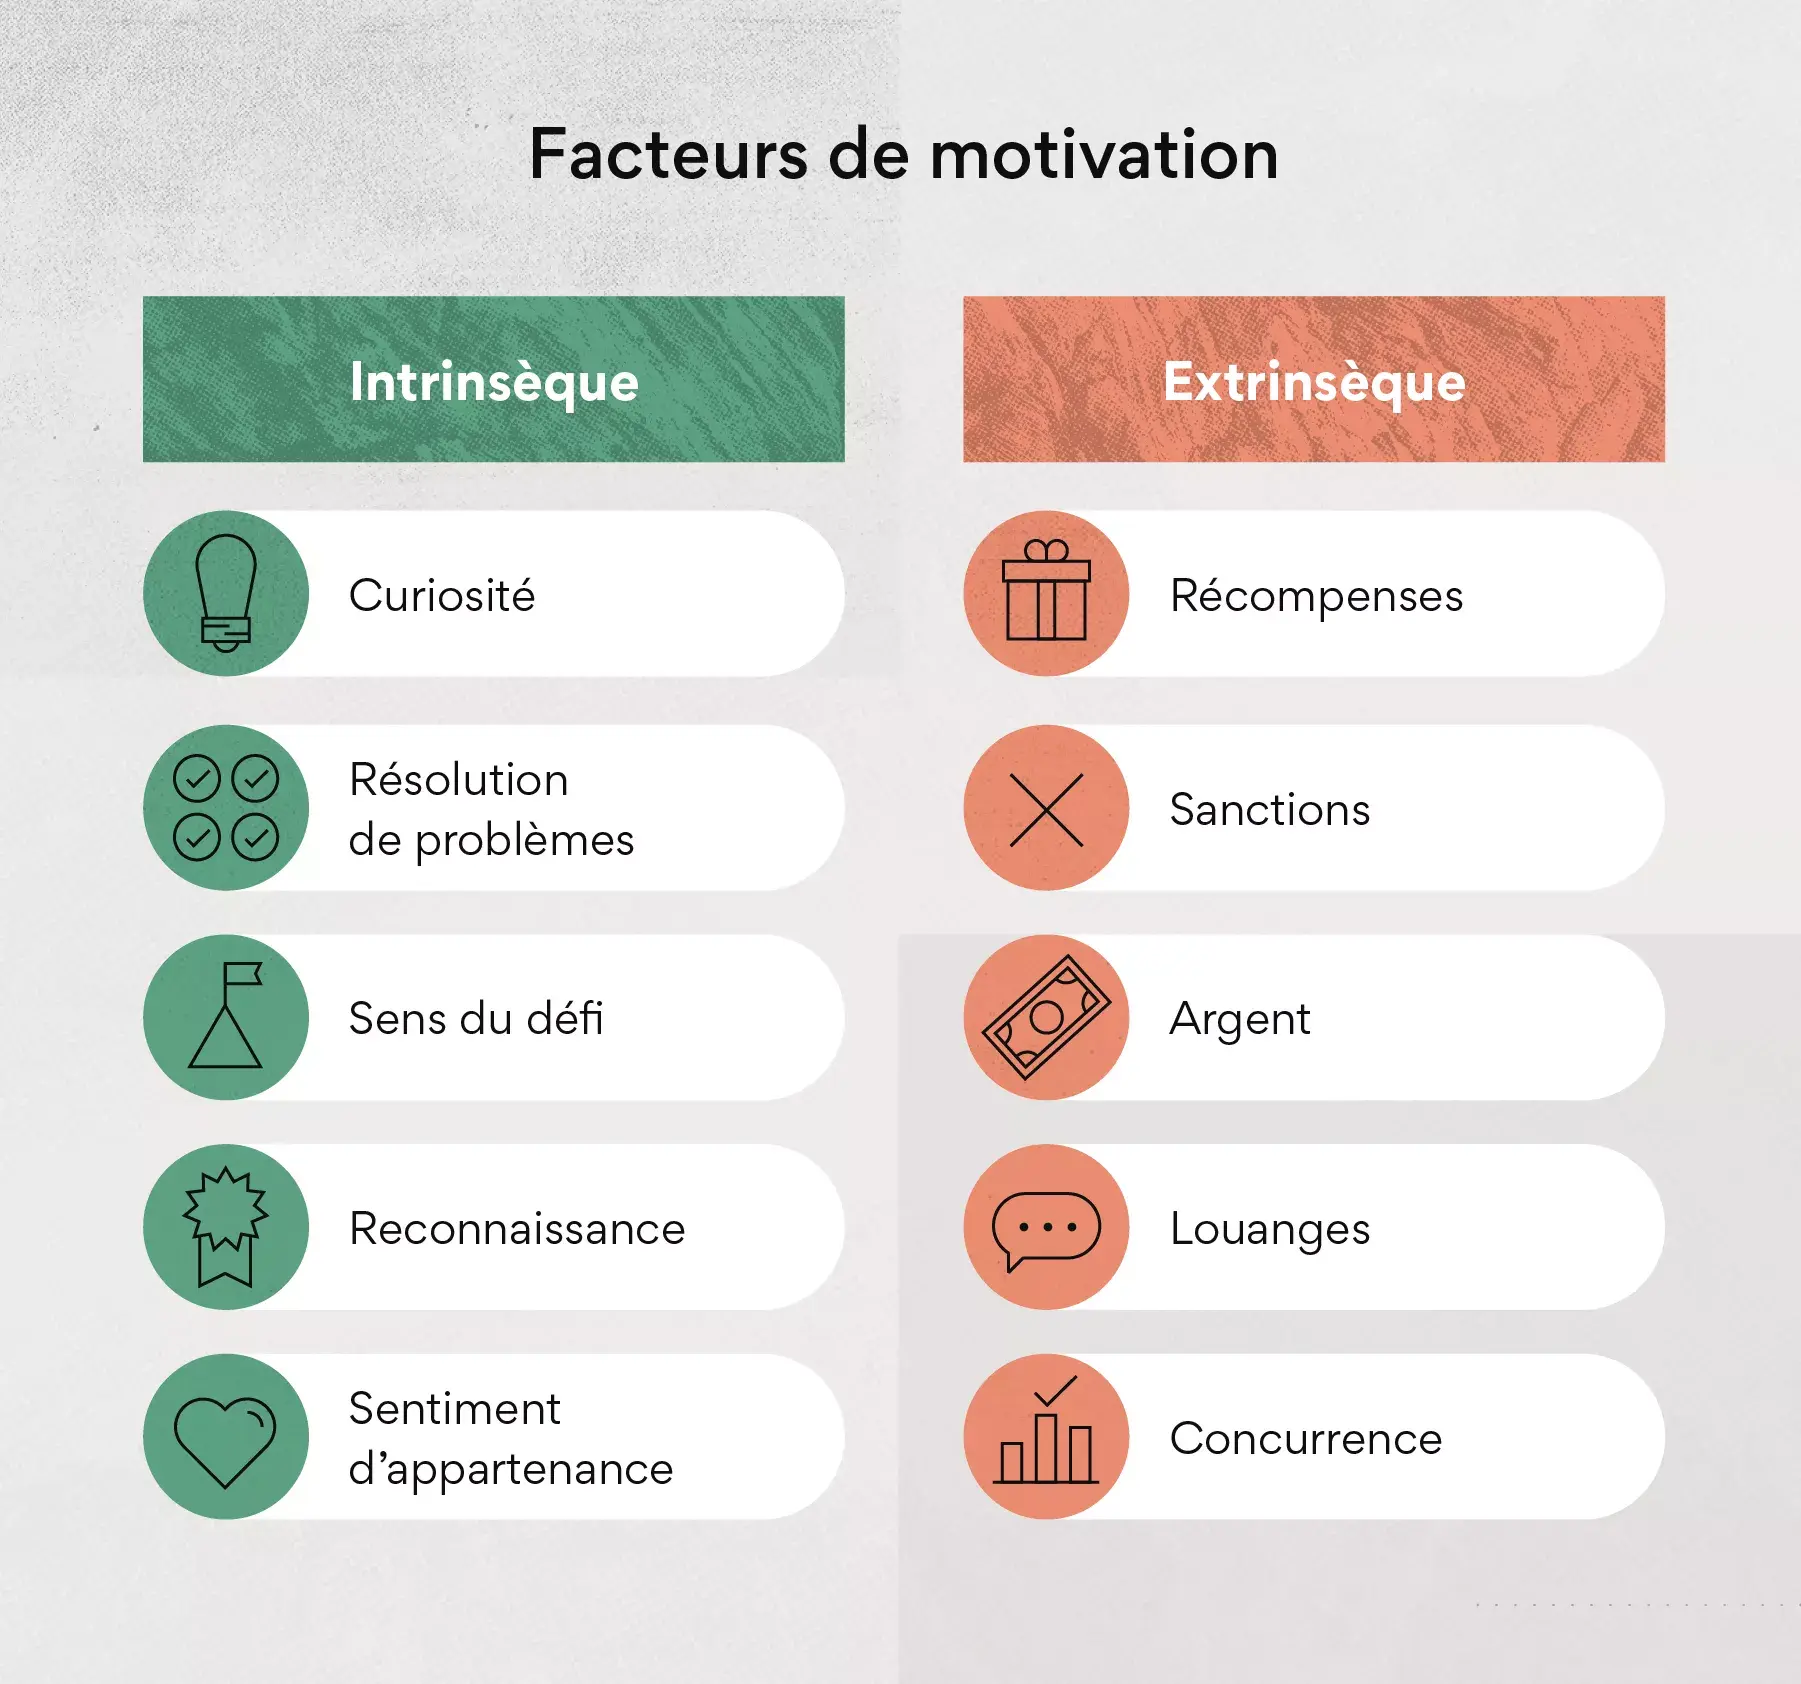 Les facteurs de motivation et leurs effets